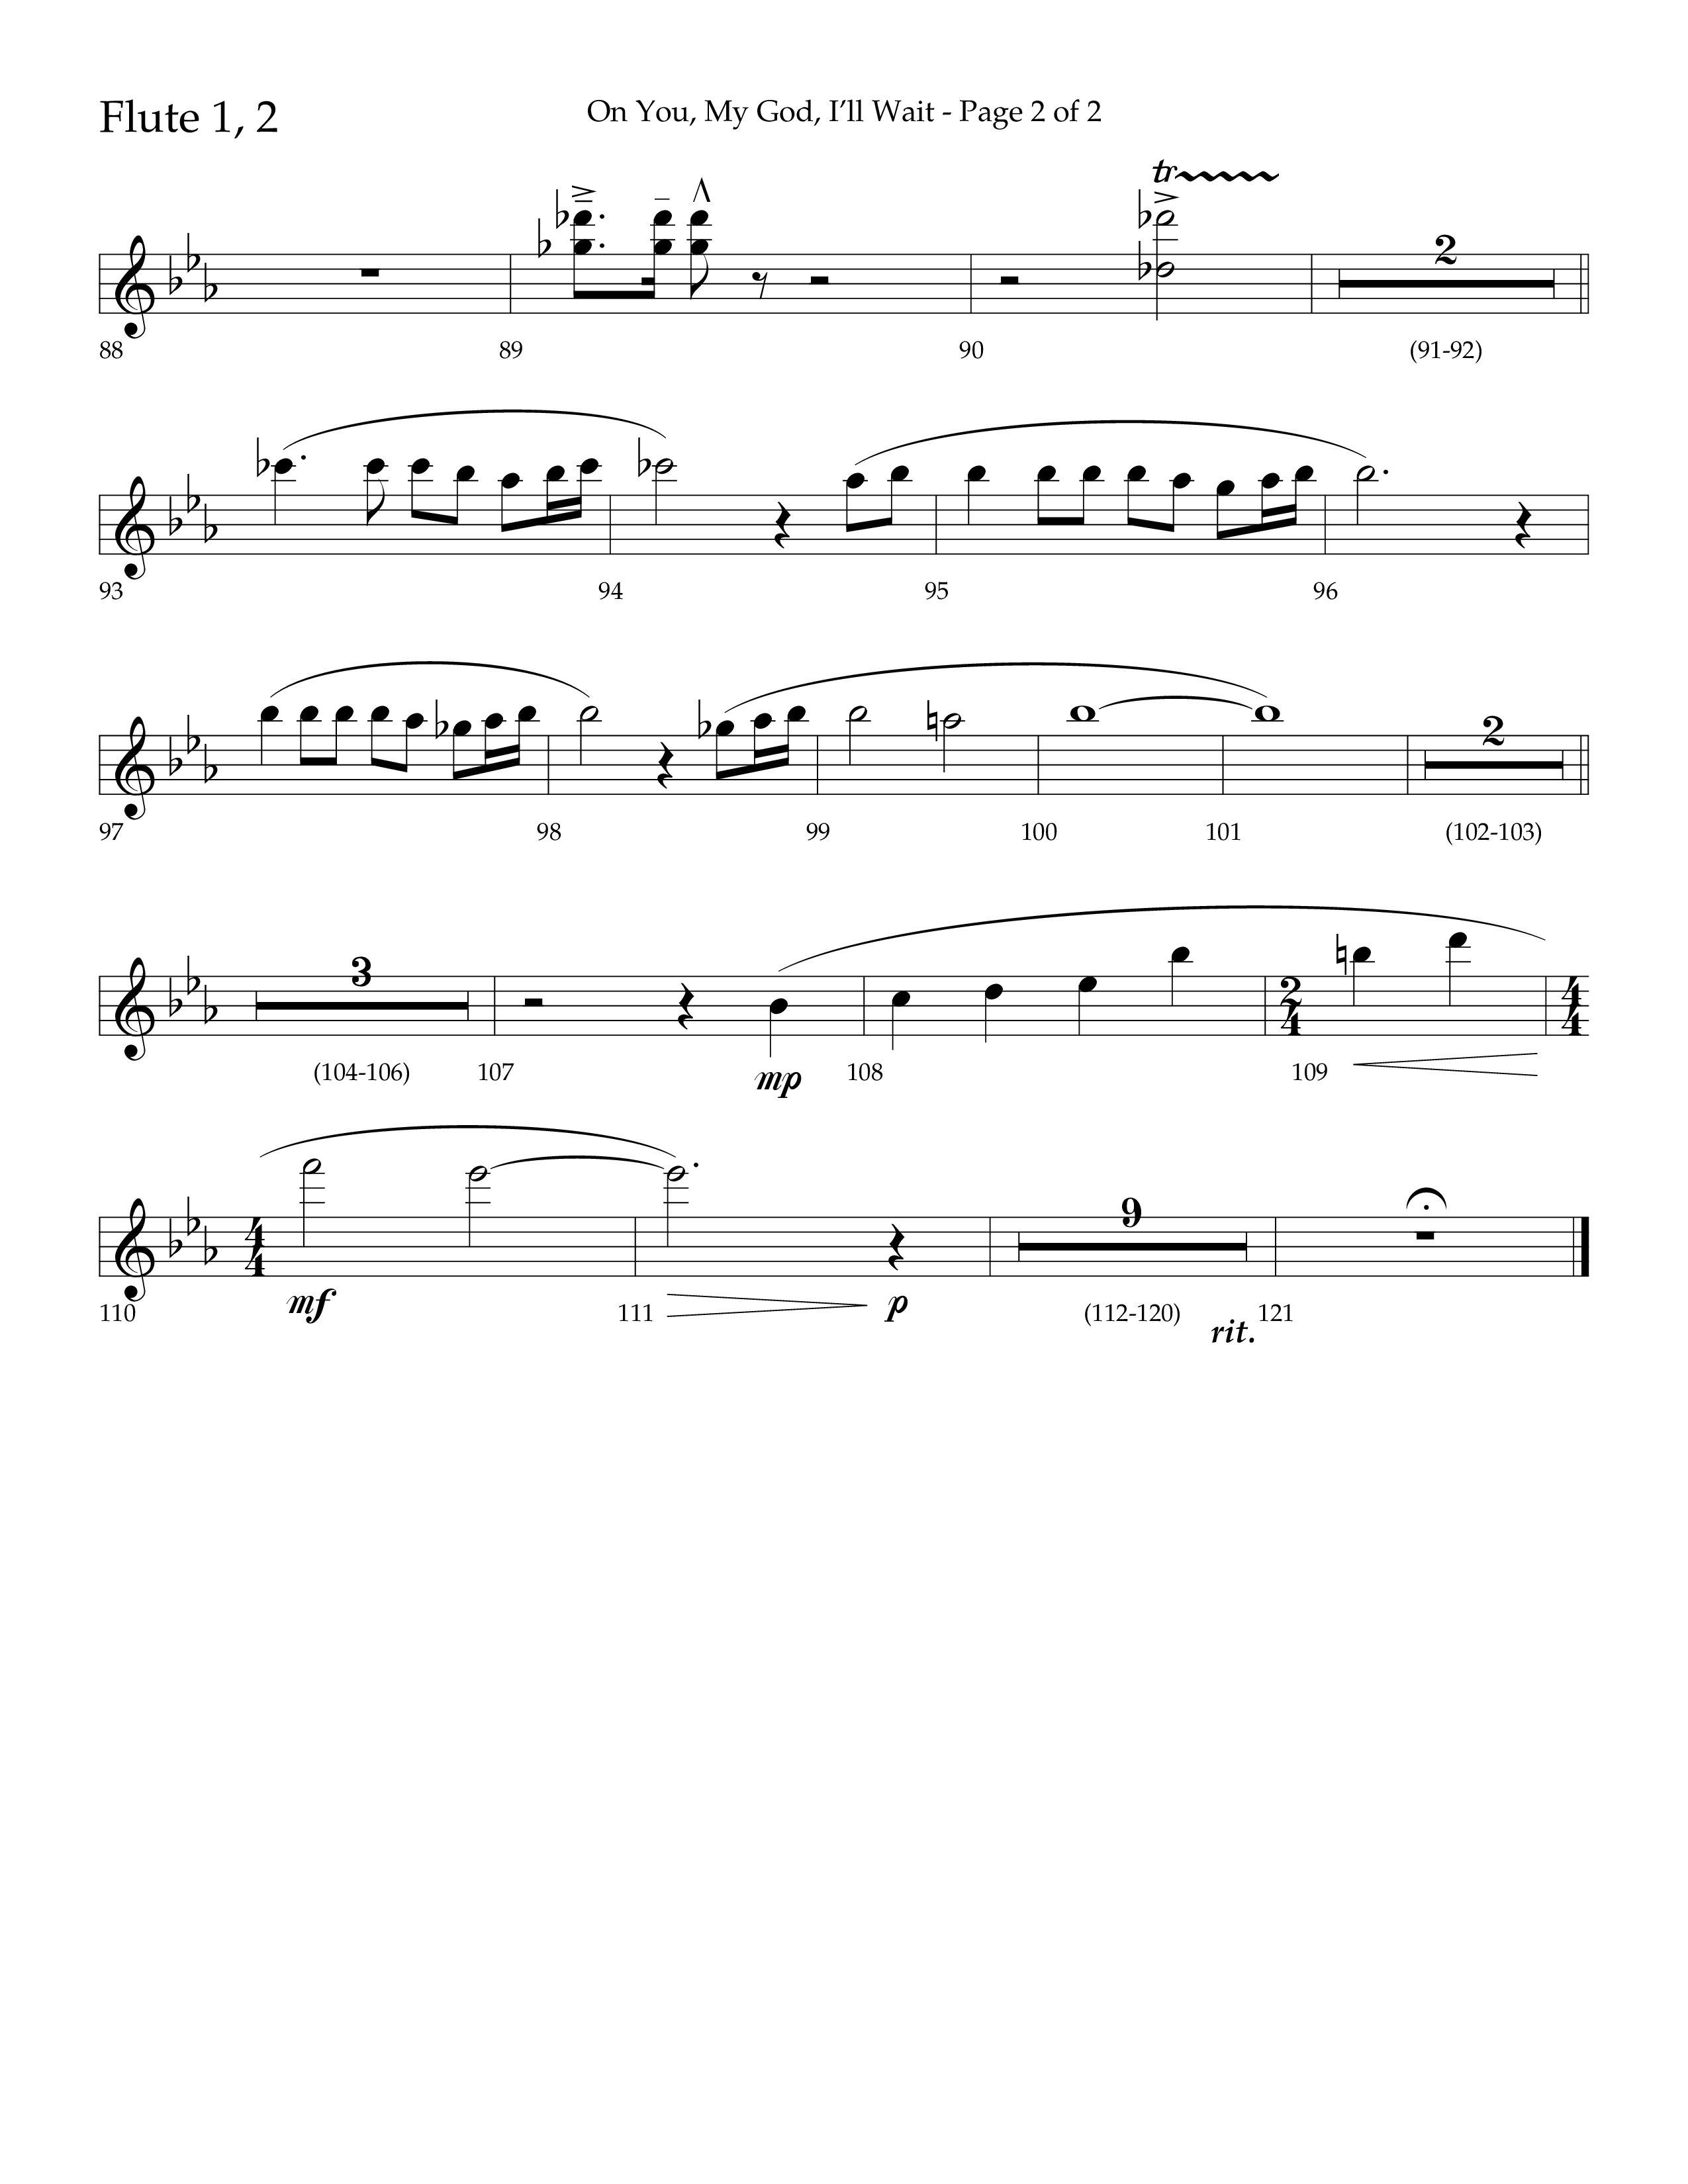 On You My God I'll Wait (Choral Anthem SATB) Flute 1/2 (Lifeway Choral / Arr. Craig Adams / Arr. Mike Harland)